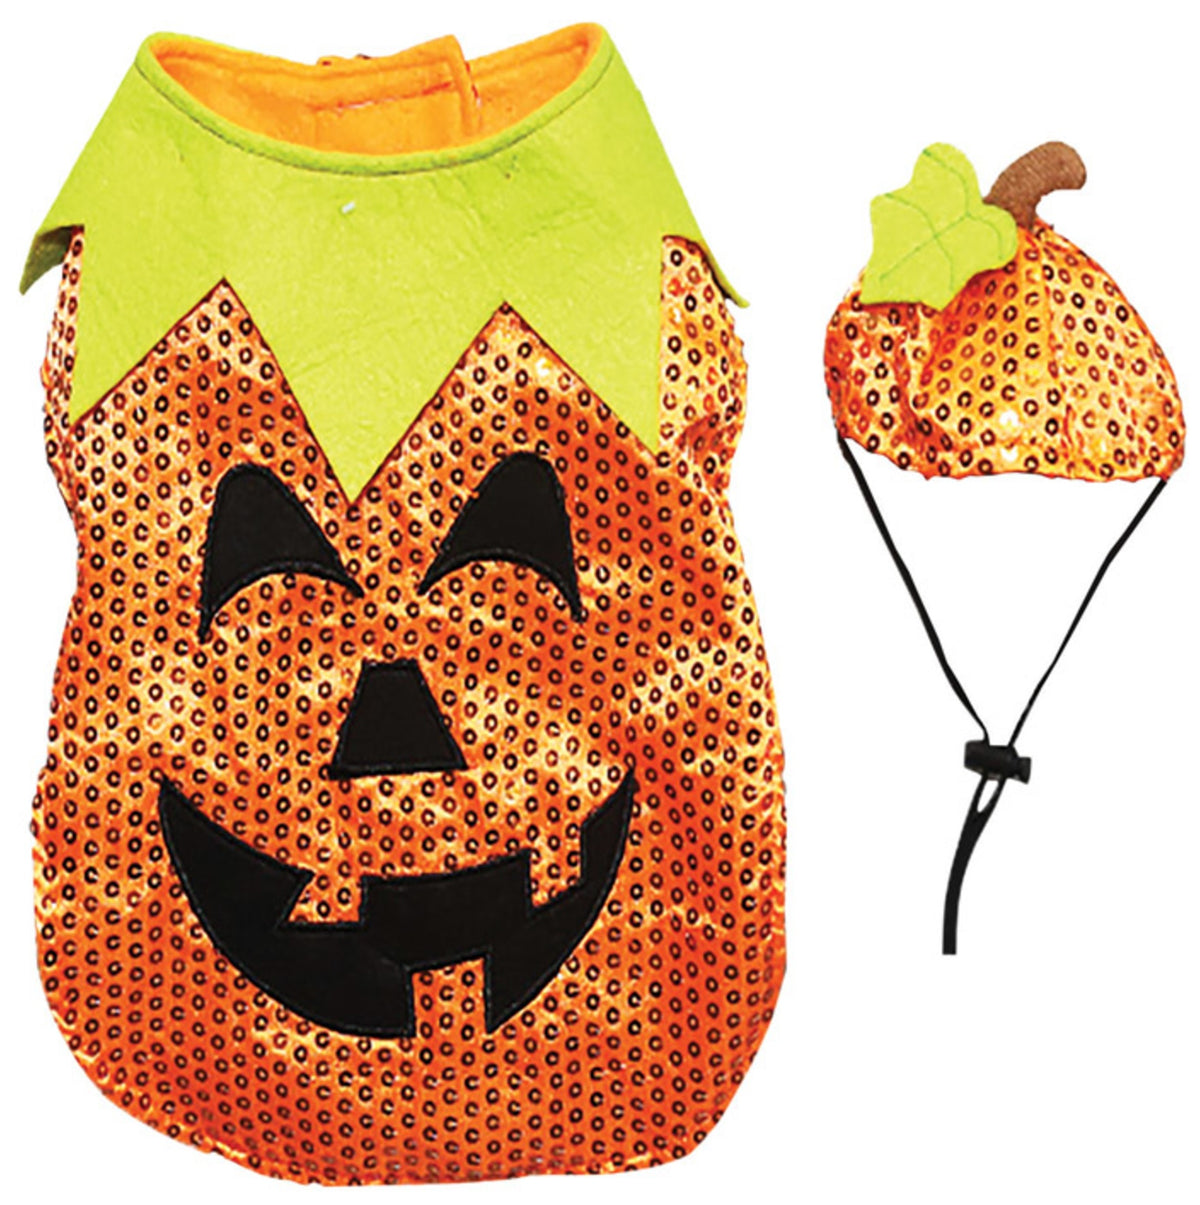 Dyno 3004234-1S Sequin Pumpkin Halloween Pet Costumes